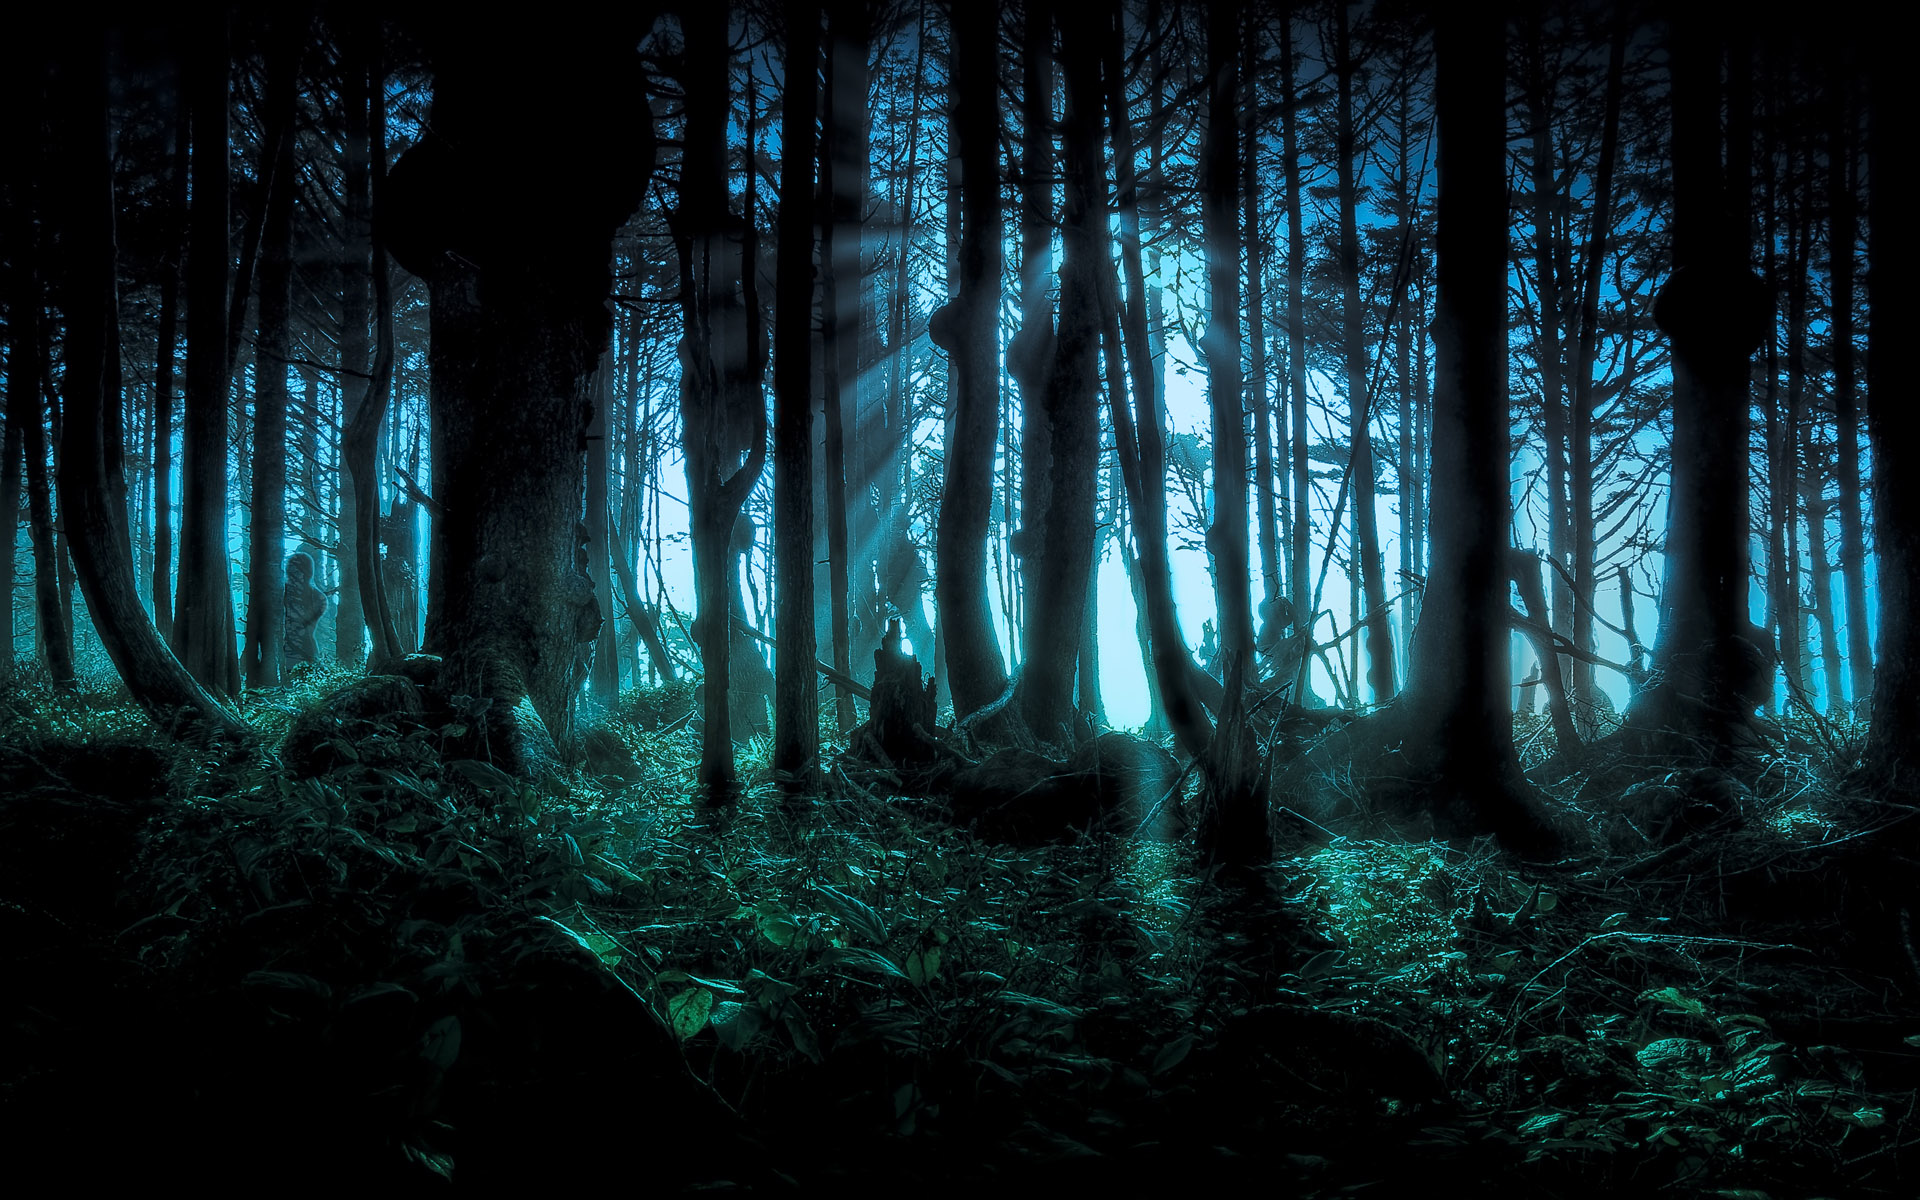 172901 免費下載壁紙 黑暗, 森林, 恐怖, 夜晚, 幽灵般的, 树, 木质 屏保和圖片